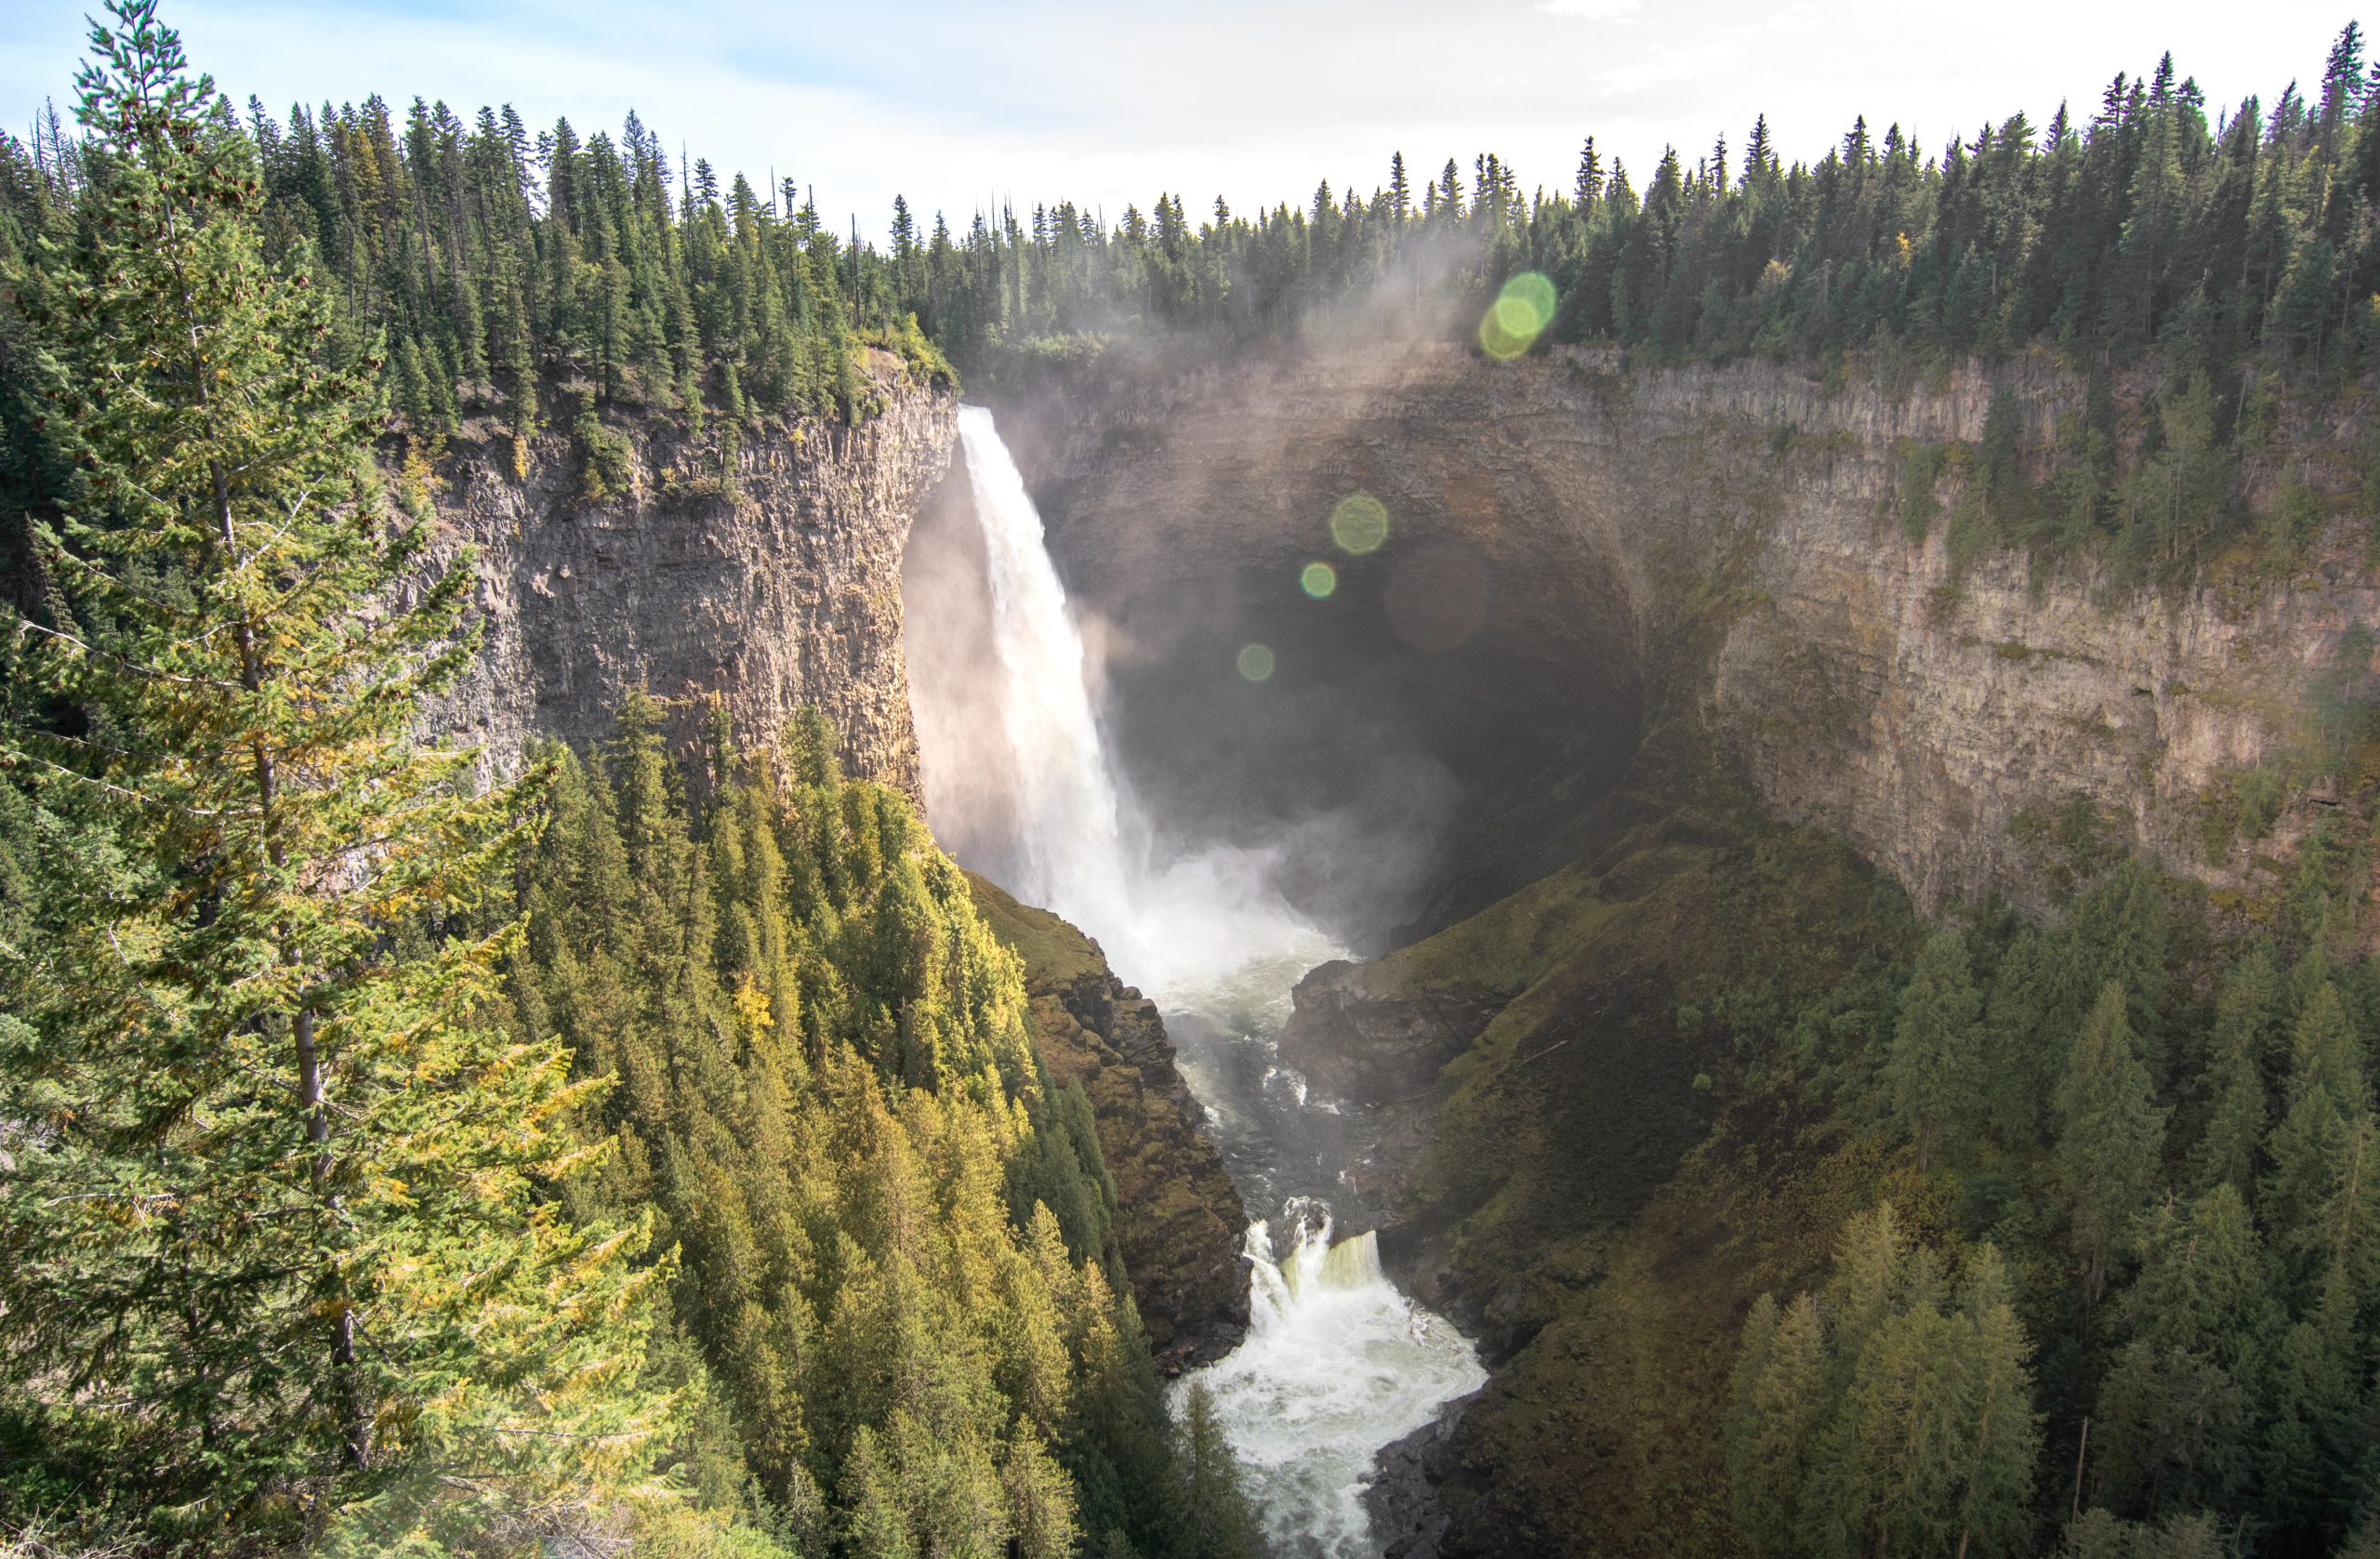 Helmcken Wasserfall im Wells Gray Provincial Park